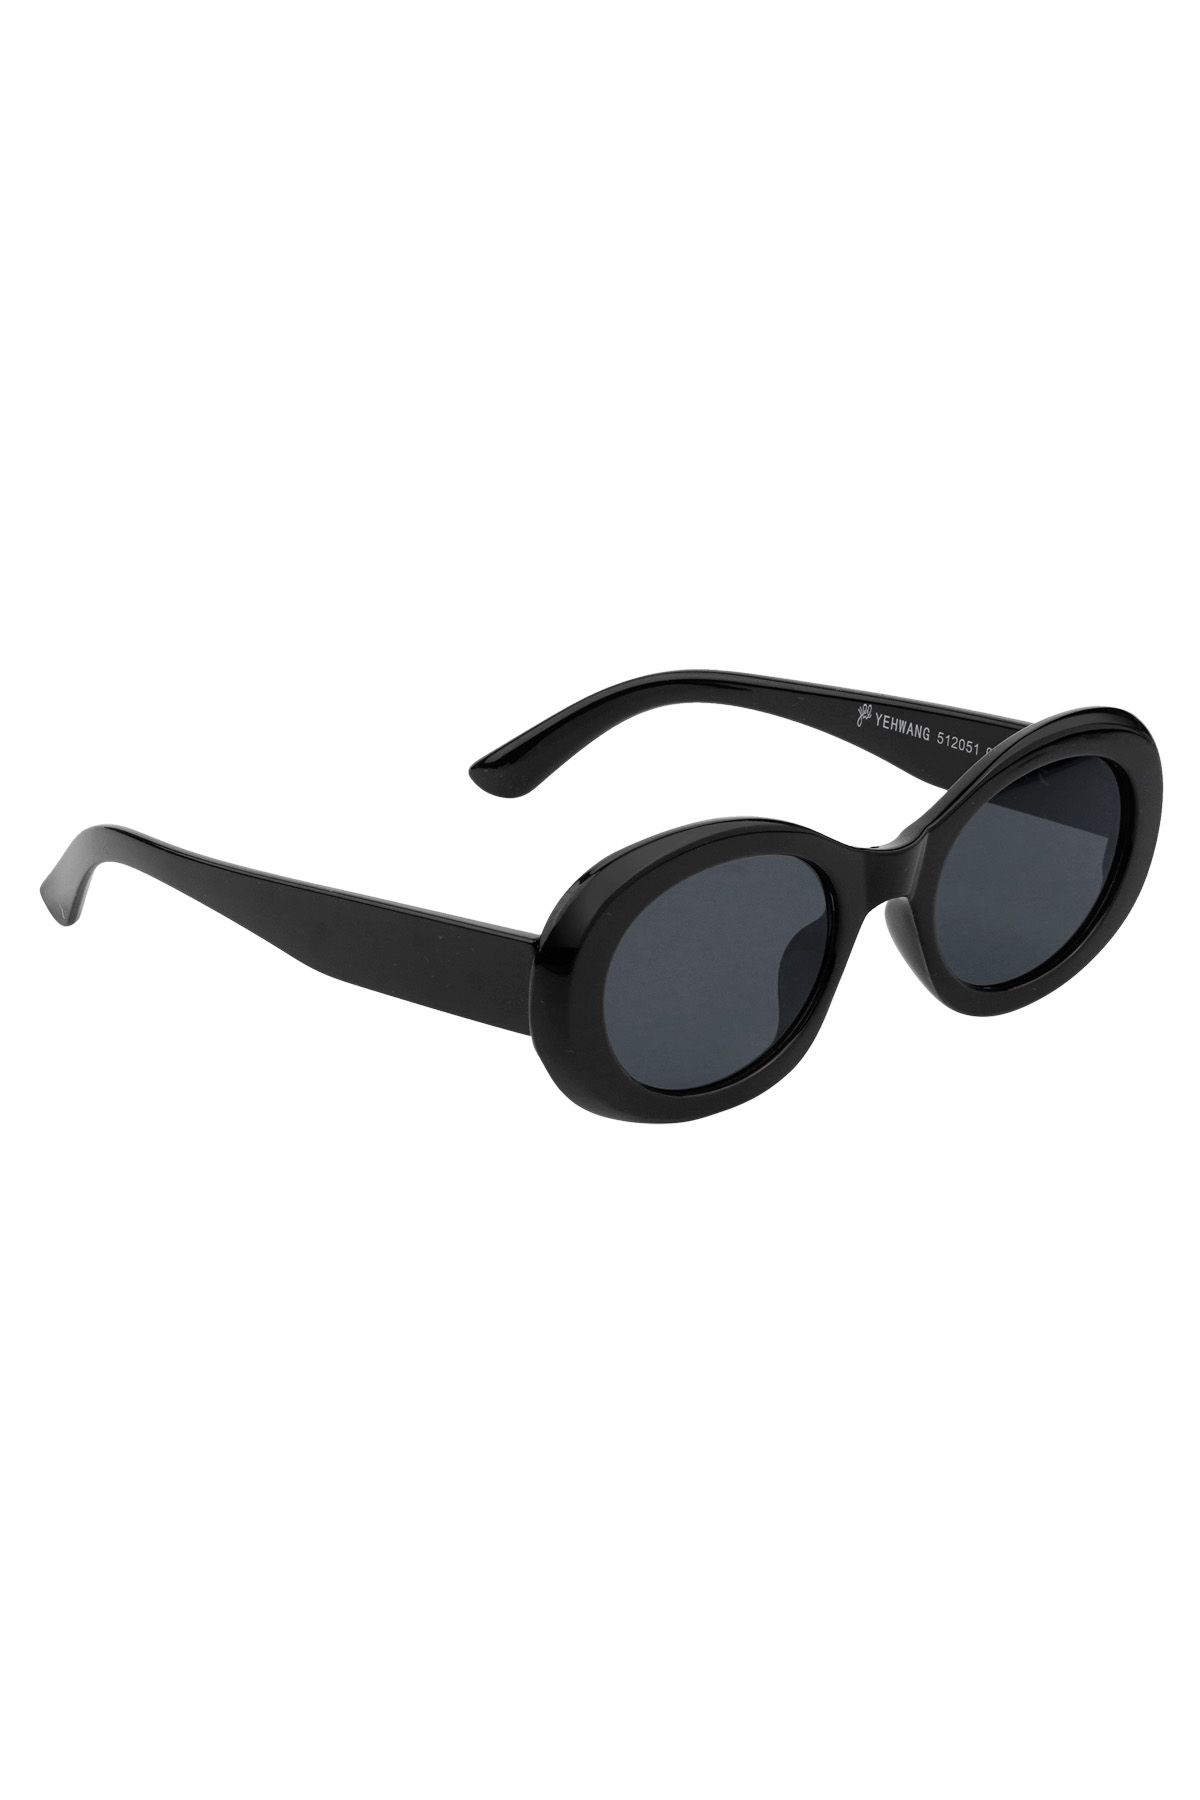 Gafas de sol con un aspecto elegante: negro.